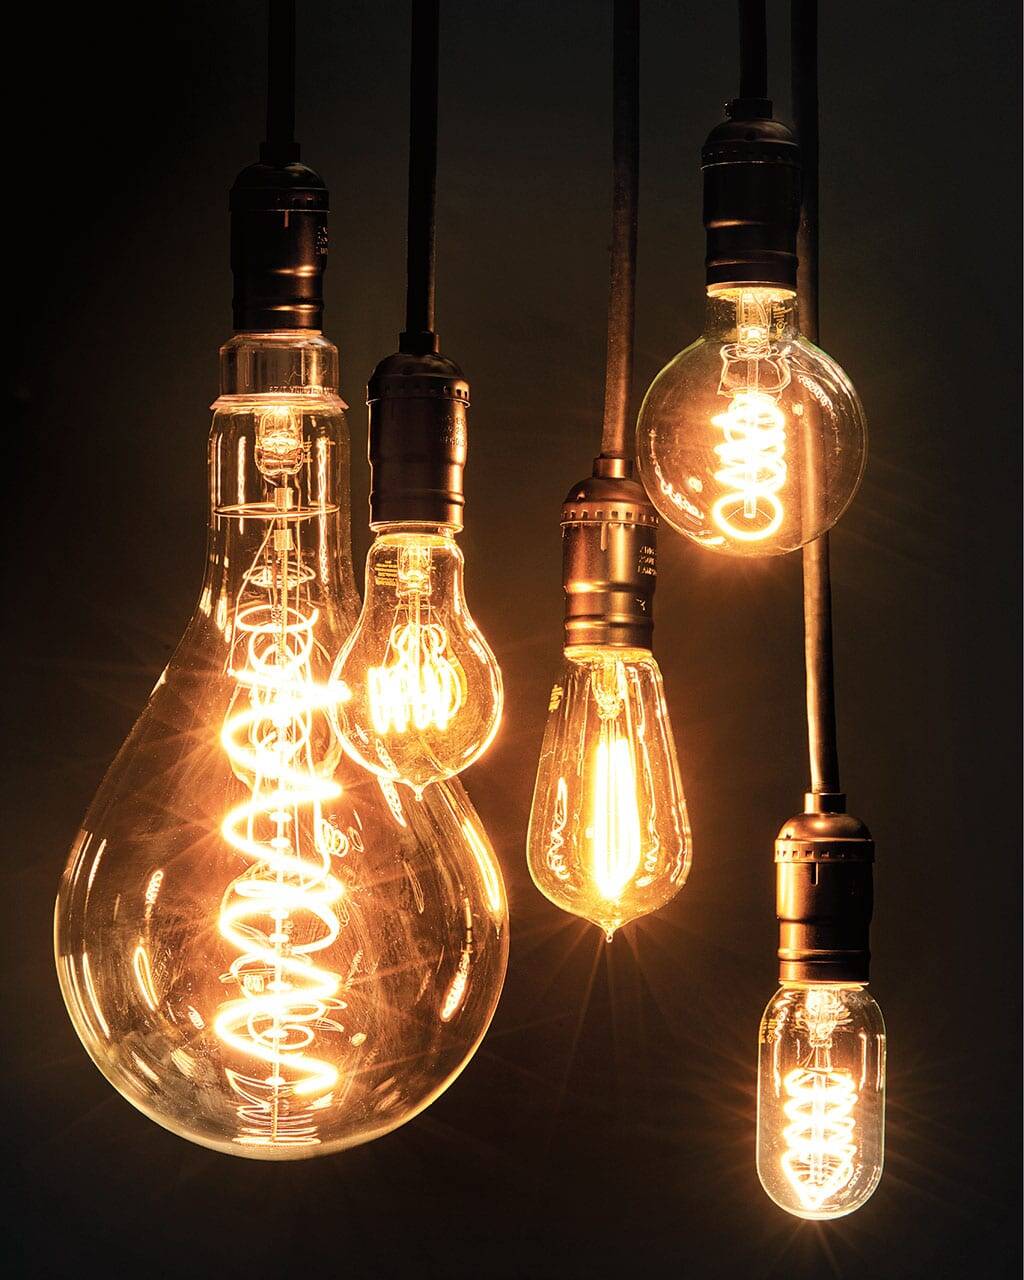 節能超70% “涪陵造”LED走向世界